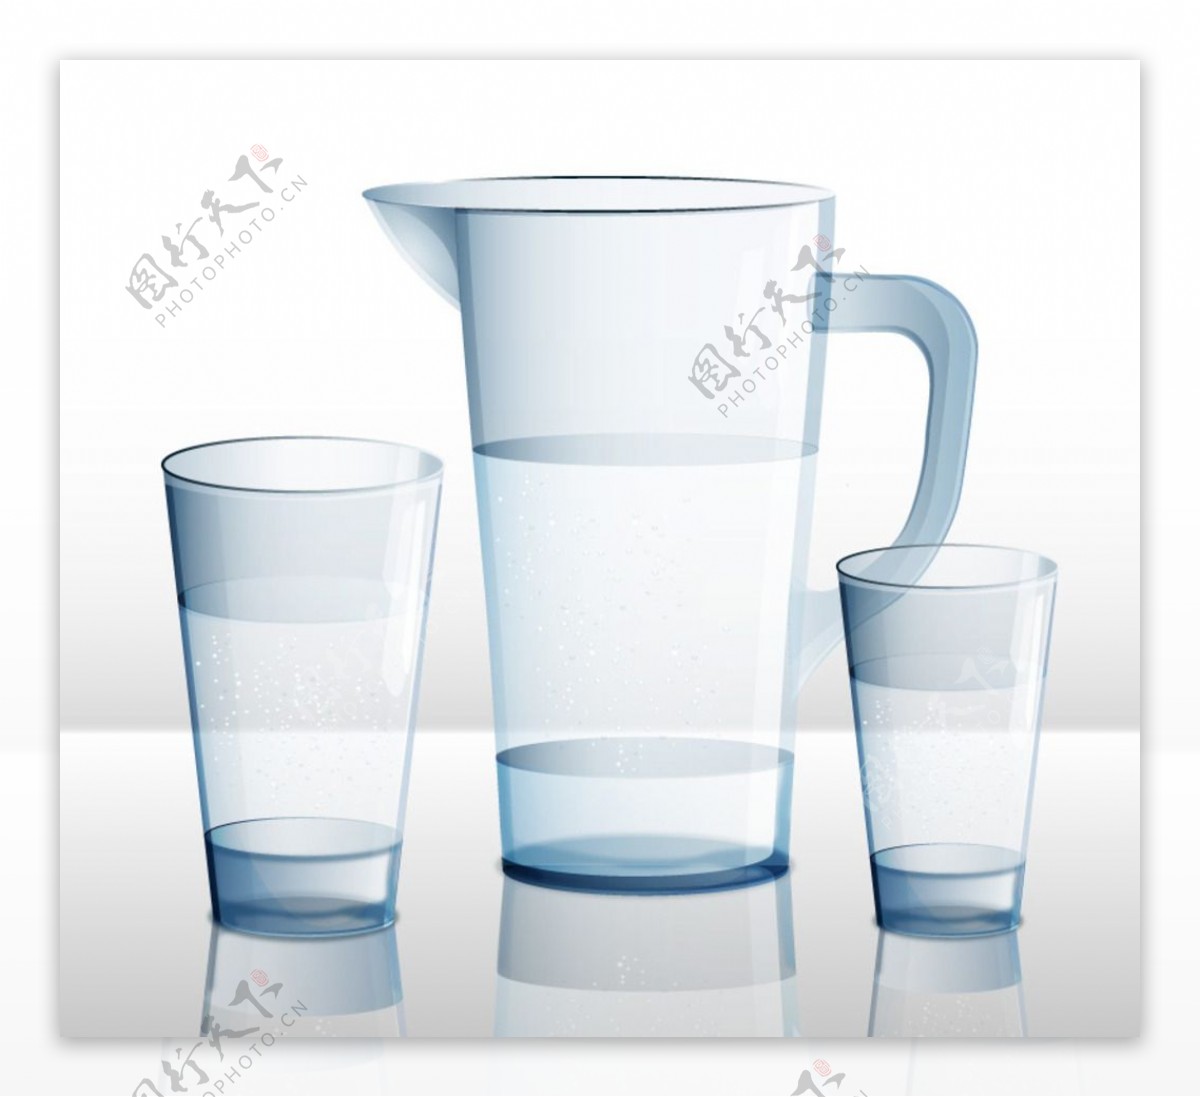 水壶和杯子设计矢量素材